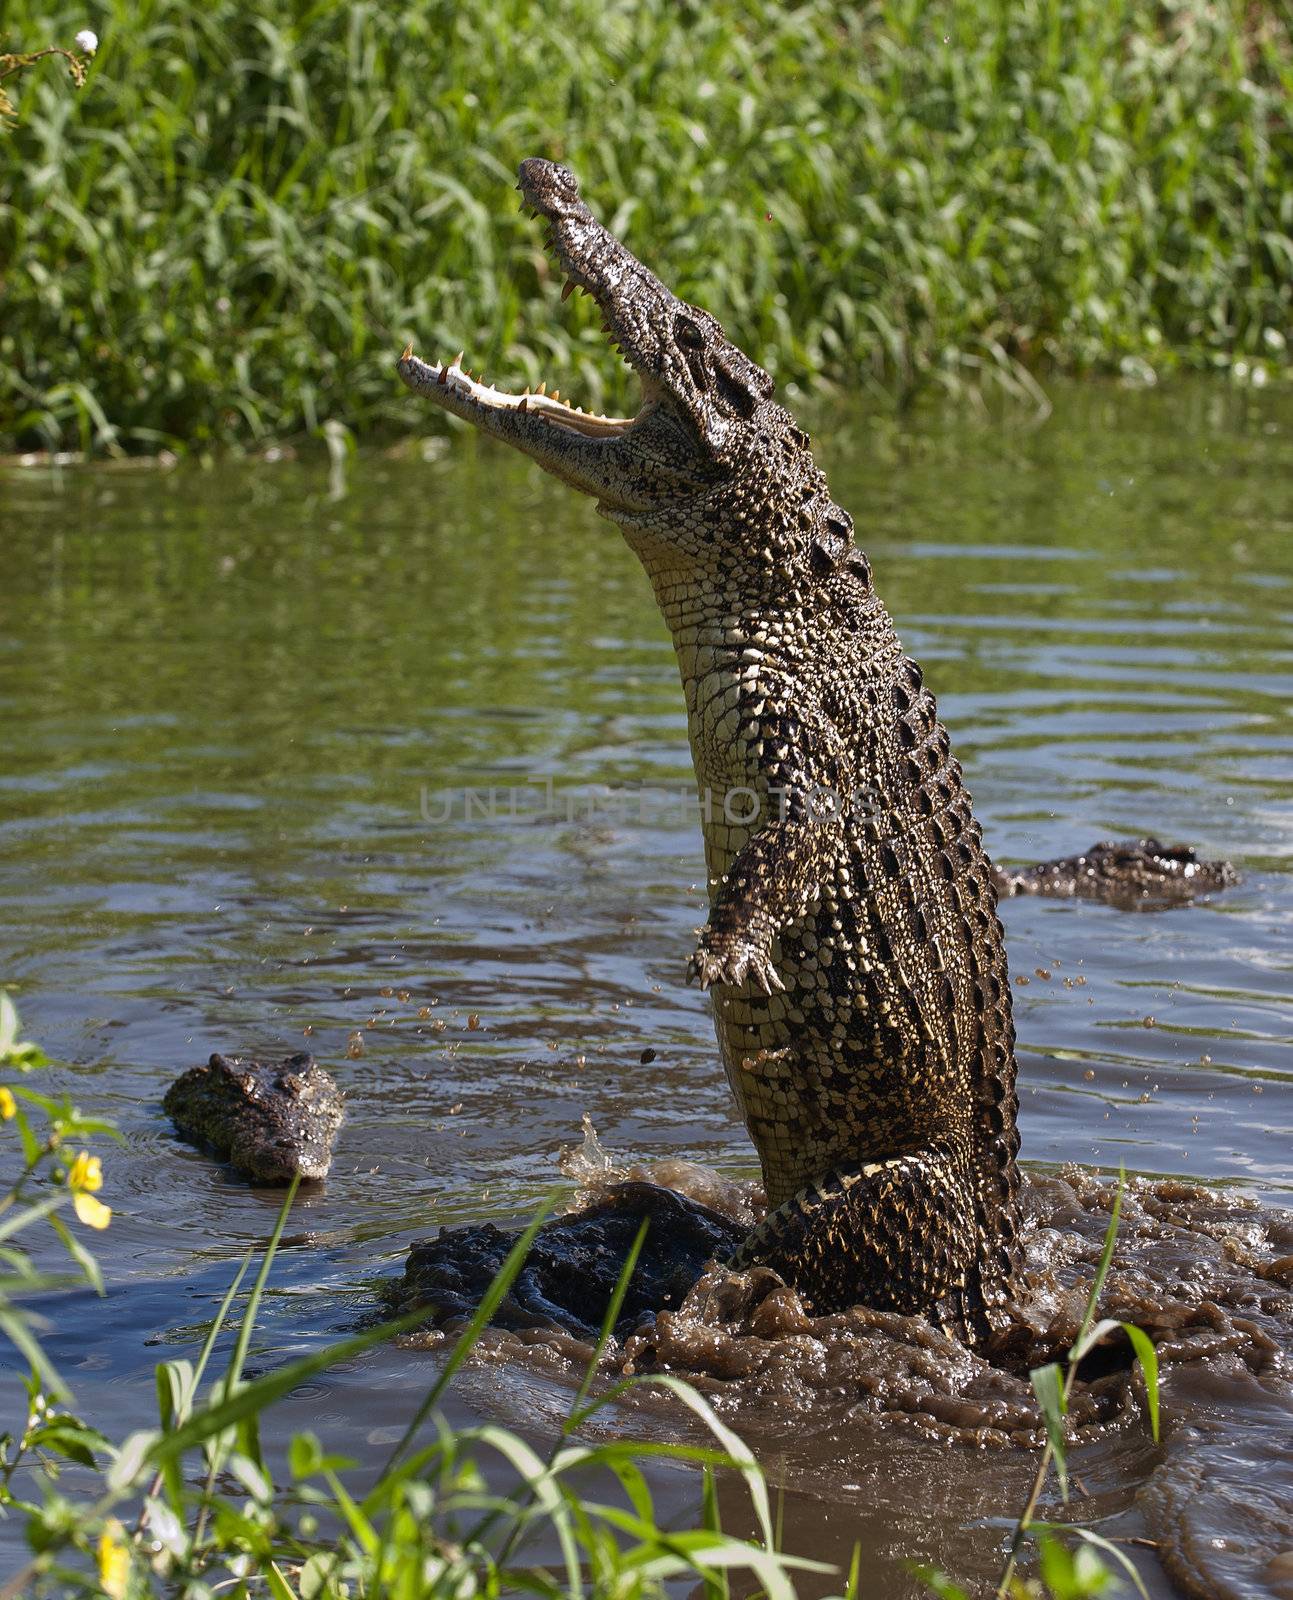 Attack crocodile by SURZ